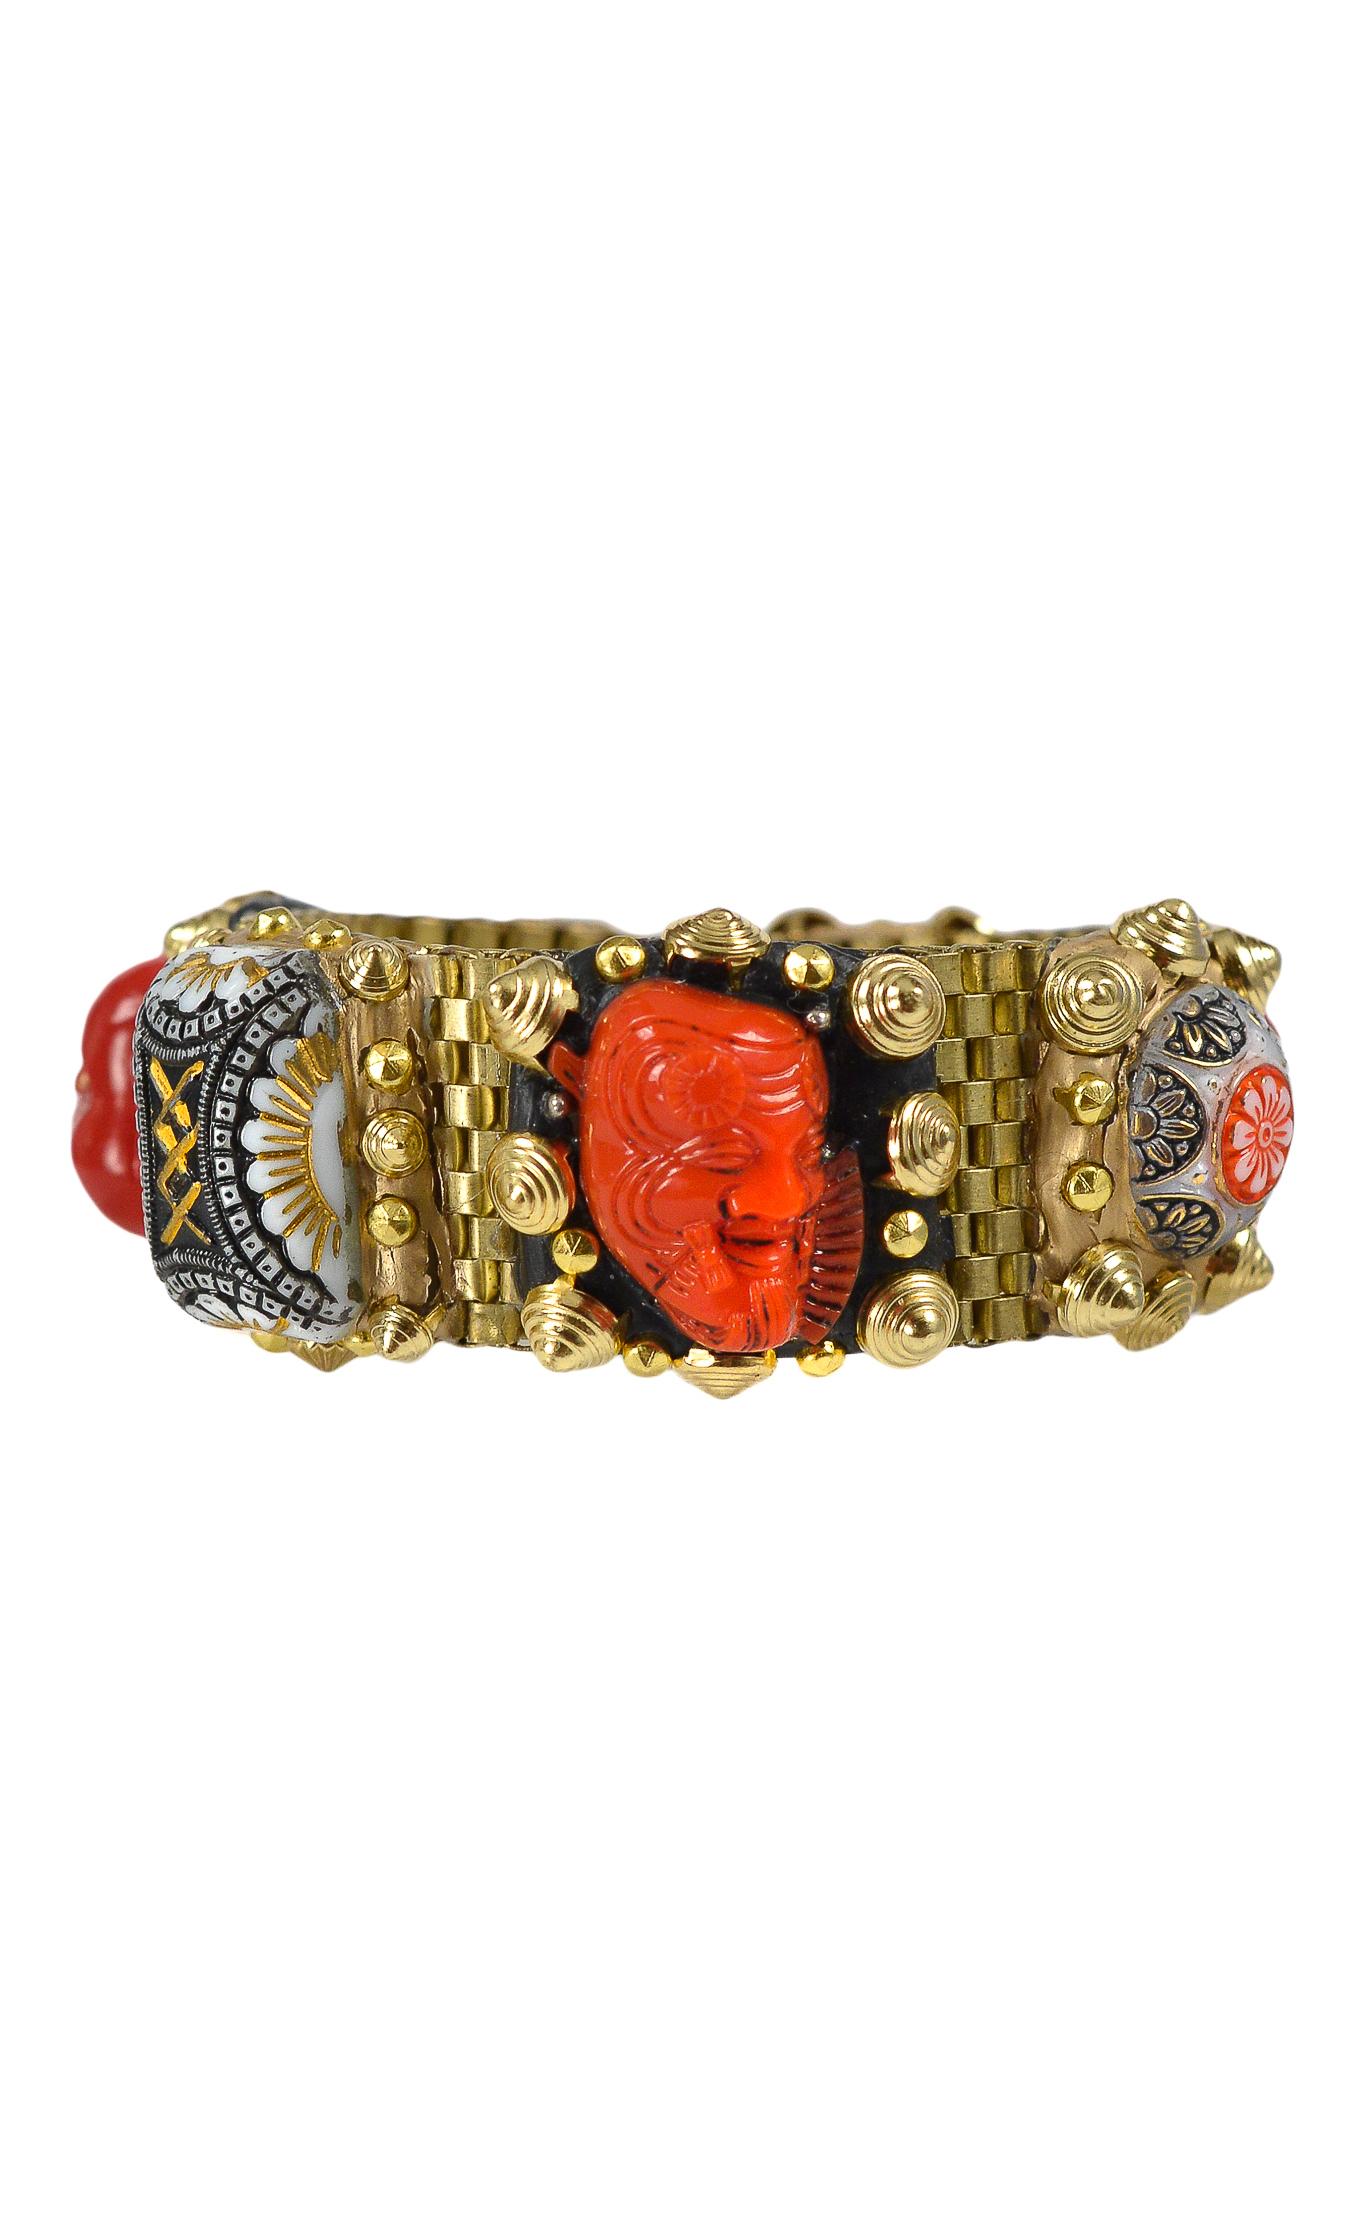 Bracelet à maillons en laiton Richard Minadeo présentant un bouddha rouge vintage, un masque nô rouge, des serpents et des symboles floraux sertis dans de la résine dorée et noire avec des clous dorés. Fait à la main, pièce unique.

Nous avons le